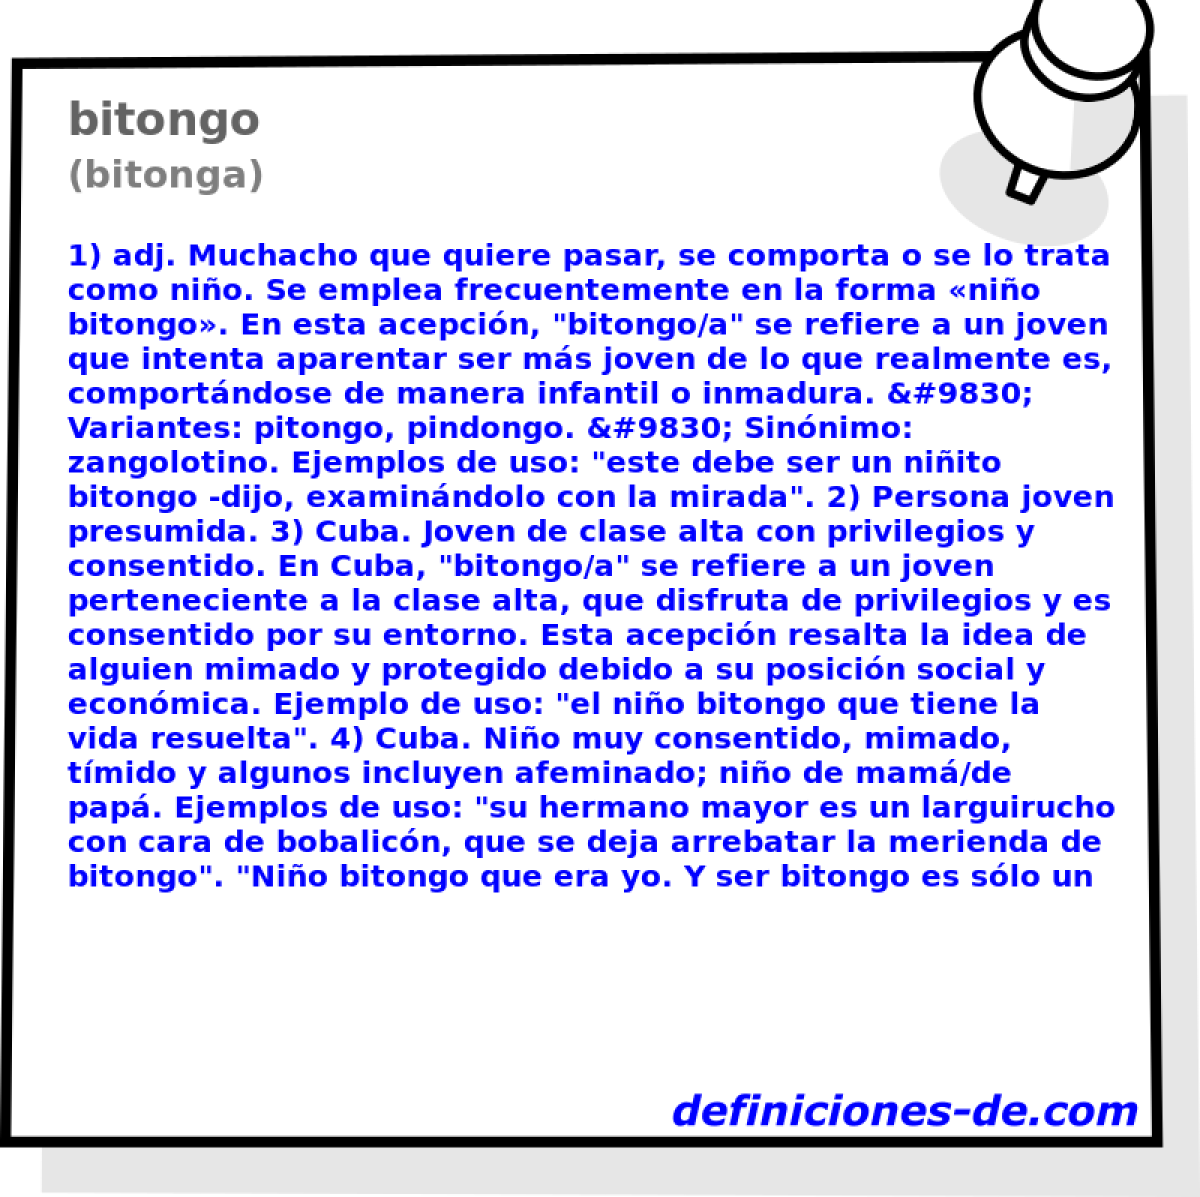 bitongo (bitonga)